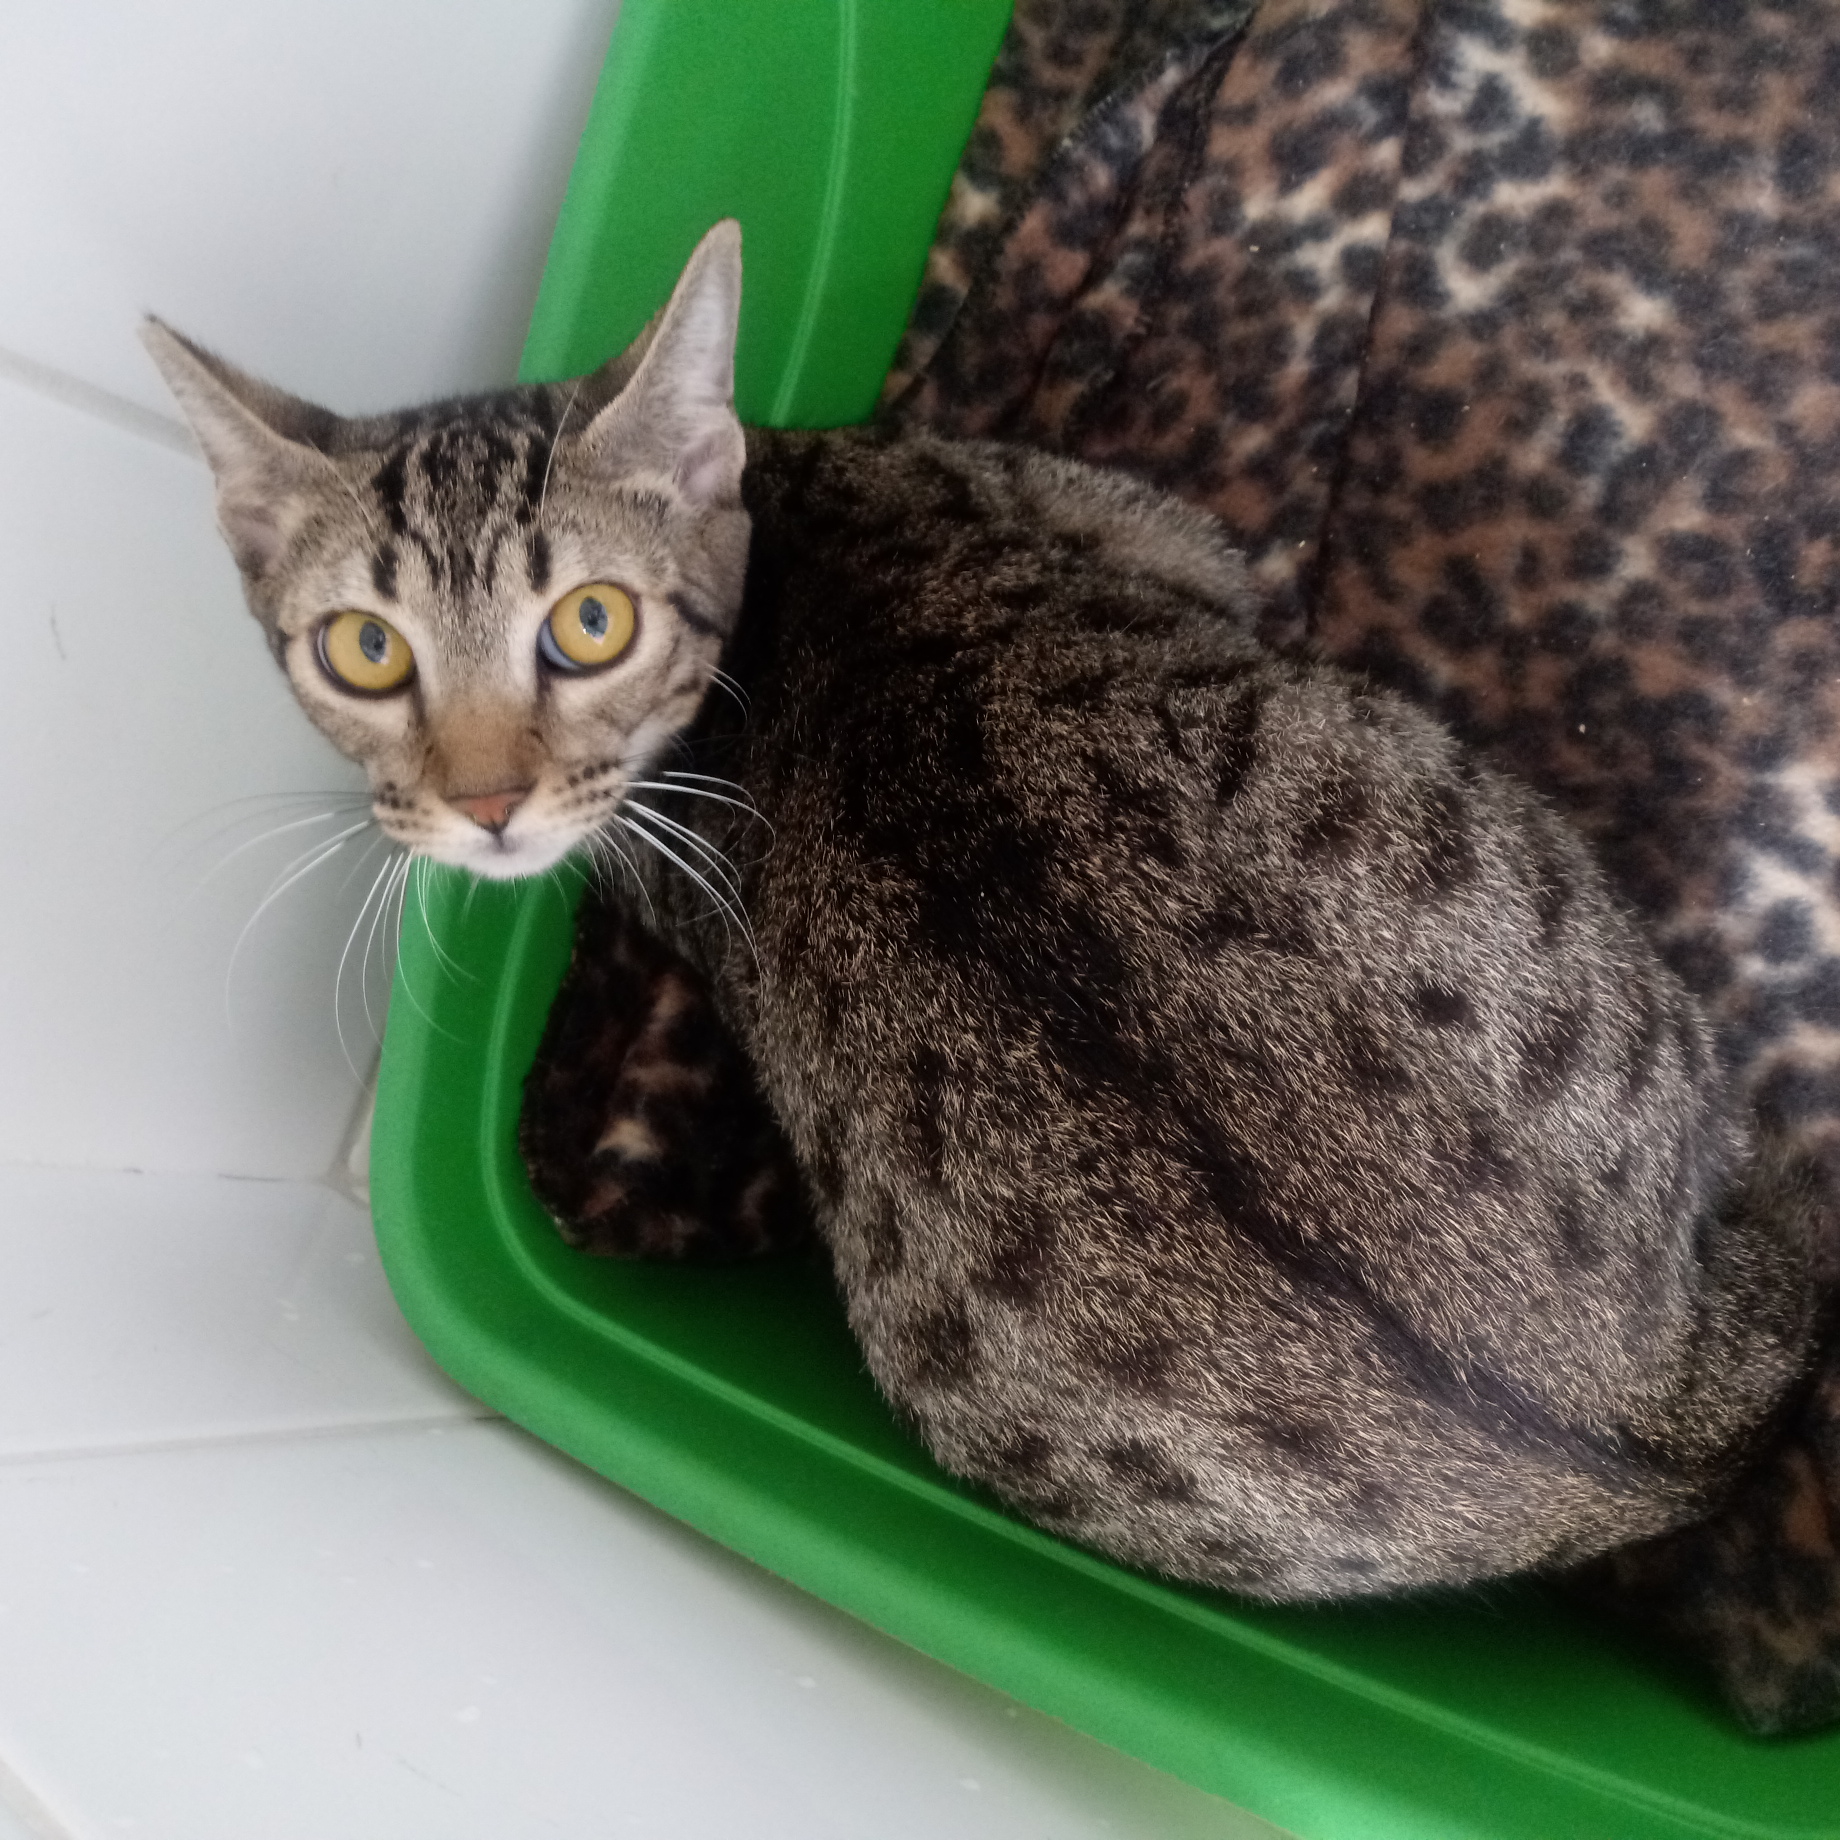 #PraCegoVer: Fotografia da gatinha Biju. Ela é rajada nas cores marrom e preto. Ela está dentro de uma caixa verde.